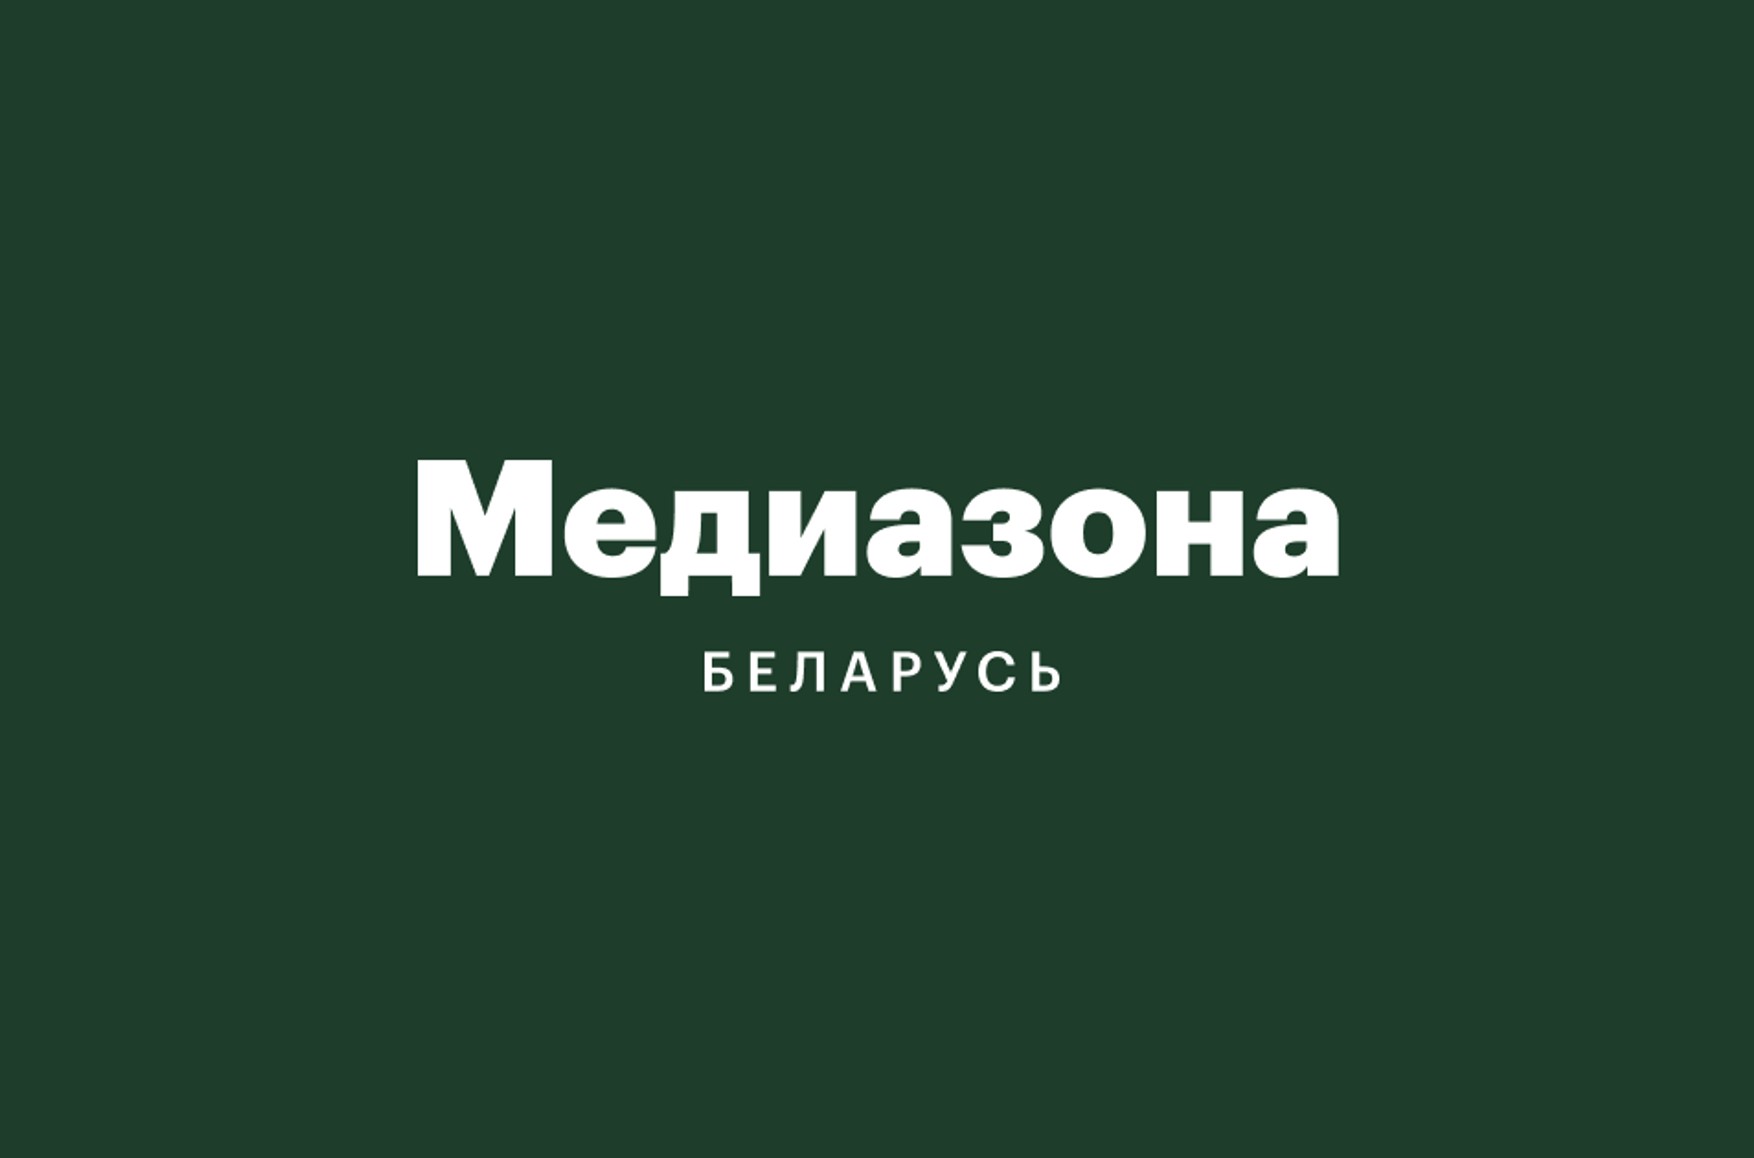 В Беларуси признали экстремистскими сайт и соцсети «Медиазона.Беларусь»